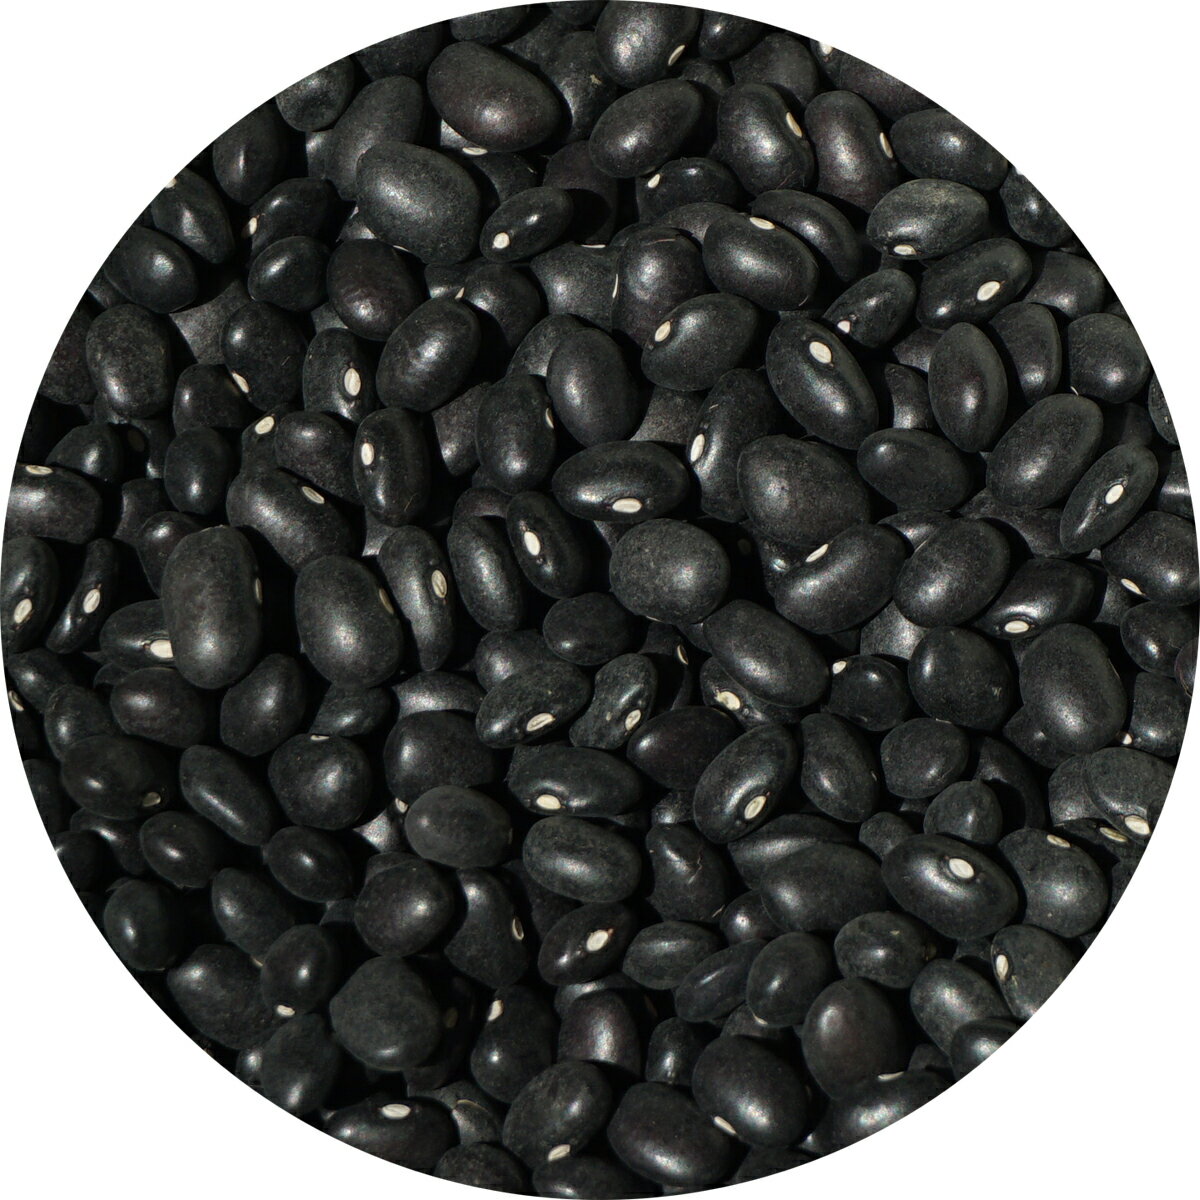 黒インゲン豆 5kg black bean 豆 いんげん豆 フェイジャオン フェイジョン フェジョン プレット feij?o phaseolus vulgaris インゲンマメ black turtle bean インゲン豆 ブラック ビーン